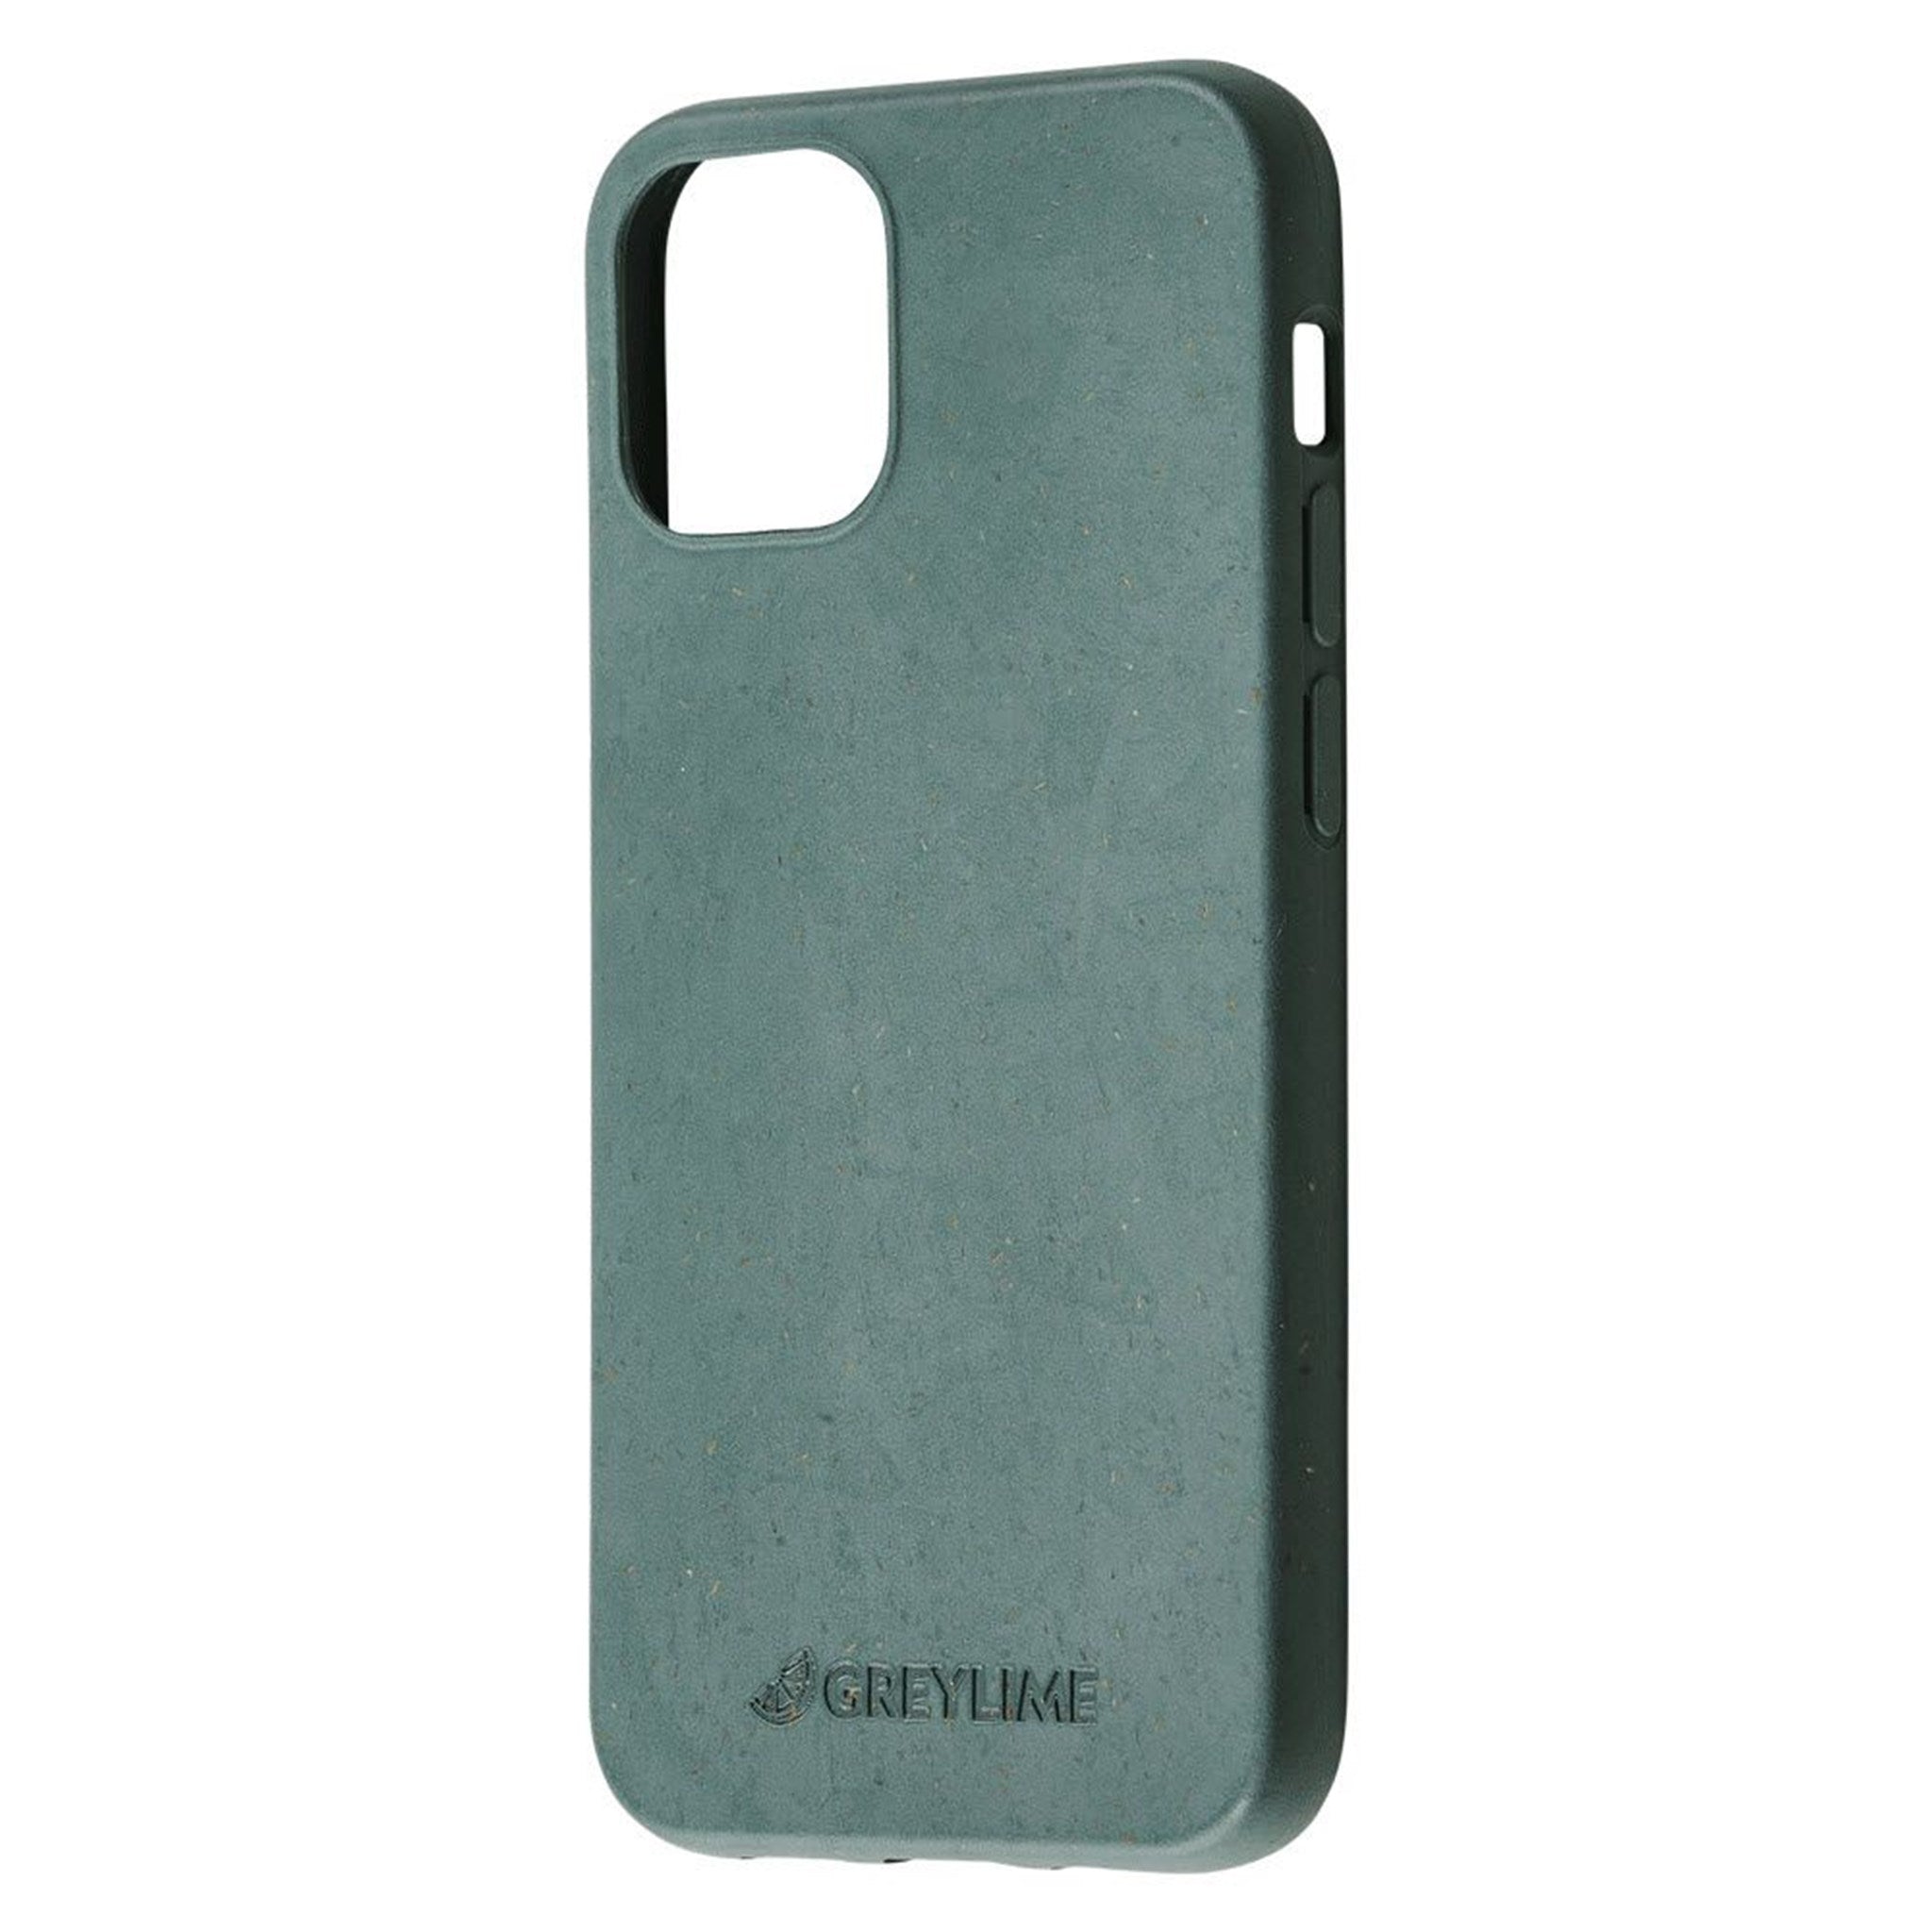 GreyLime-iPhone-12-Mini-Biodegdrable-Cover-Dark-Green-COIP12S04-V2.jpg